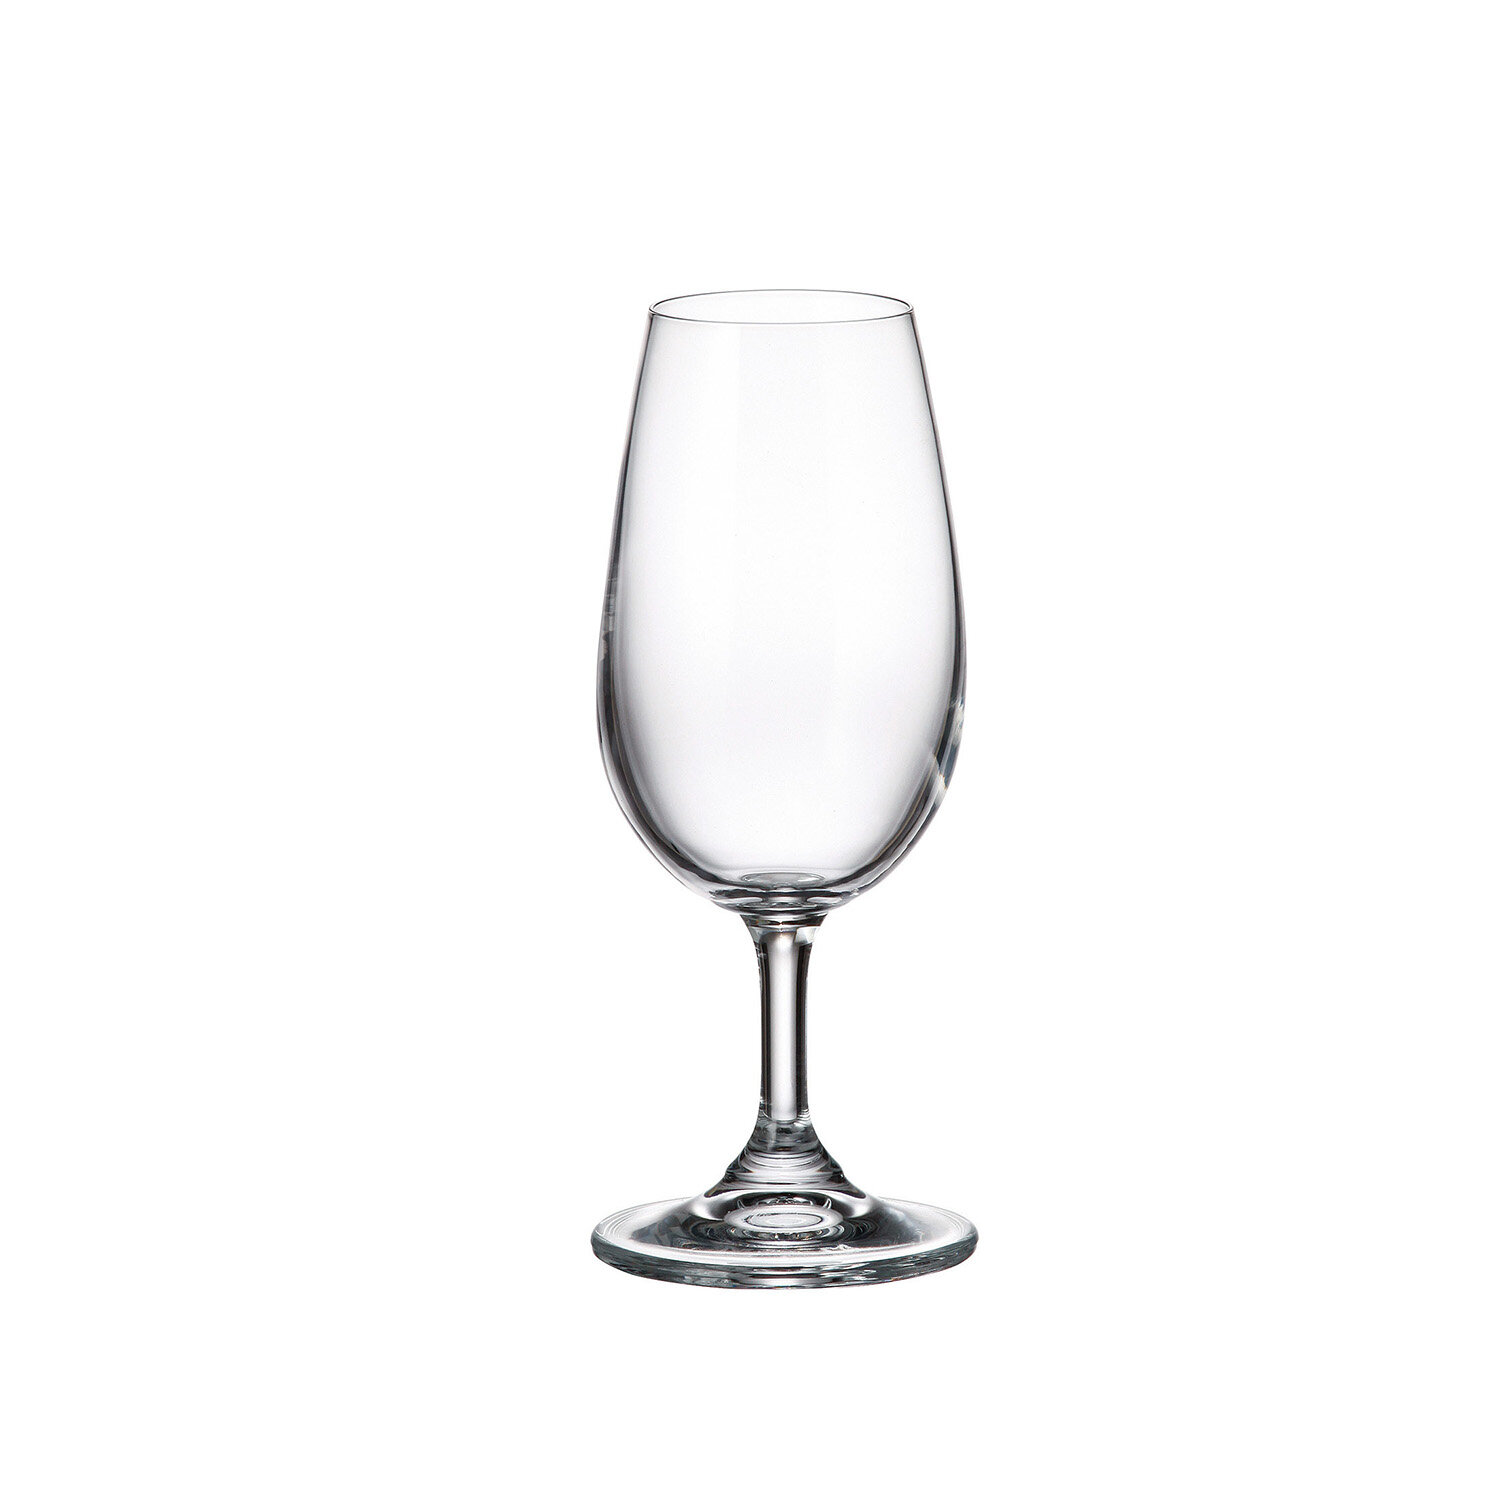 Crystalia Safe Glassware Stemmed Red Wine Glasses Set of 4, Long